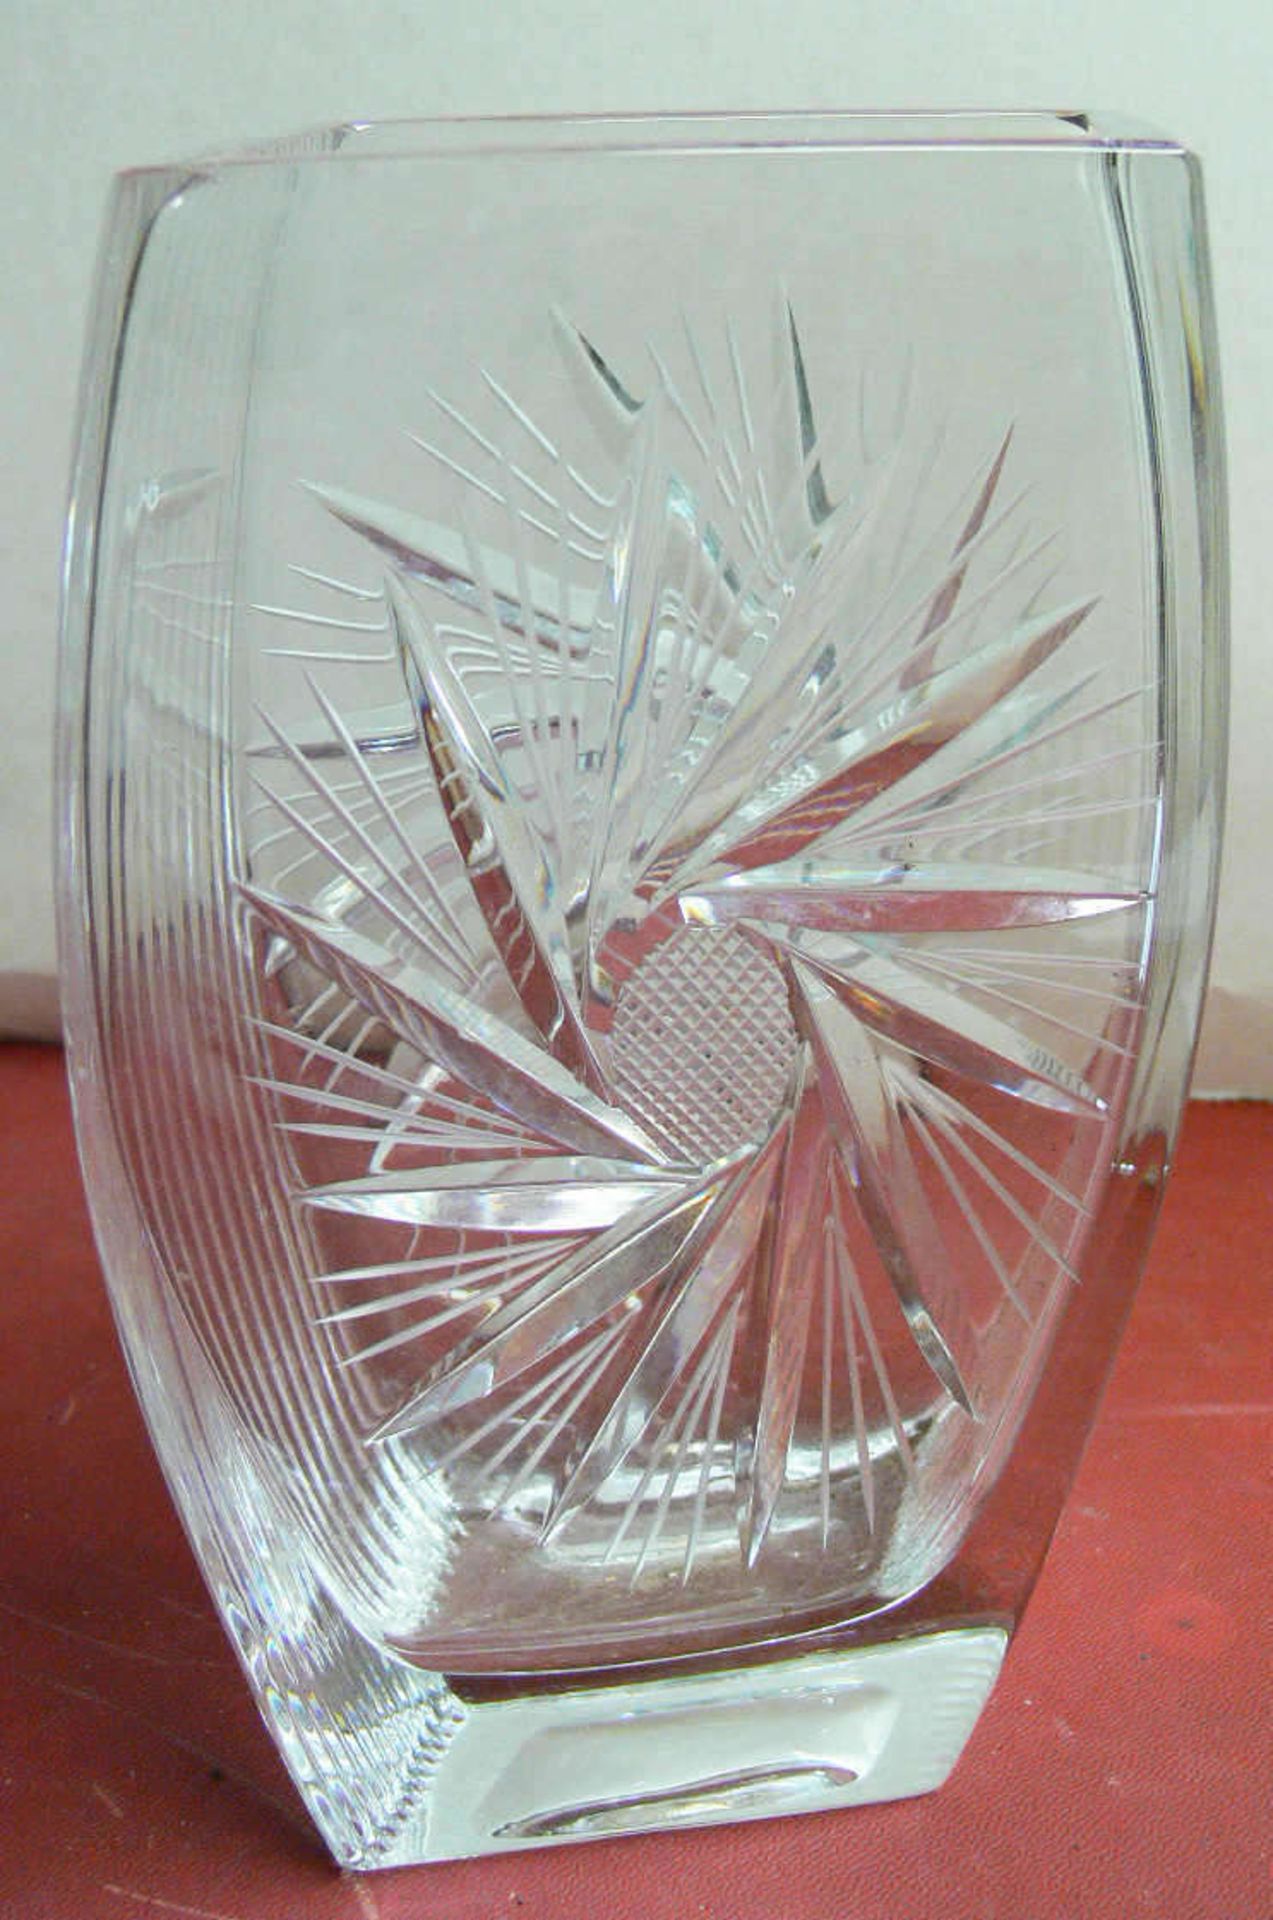 Bleikristall - Vase in Rauten - Form. Höhe: ca. 21 cm, Länge ca. 10 cm, Breite: ca. 7 cm. Lead